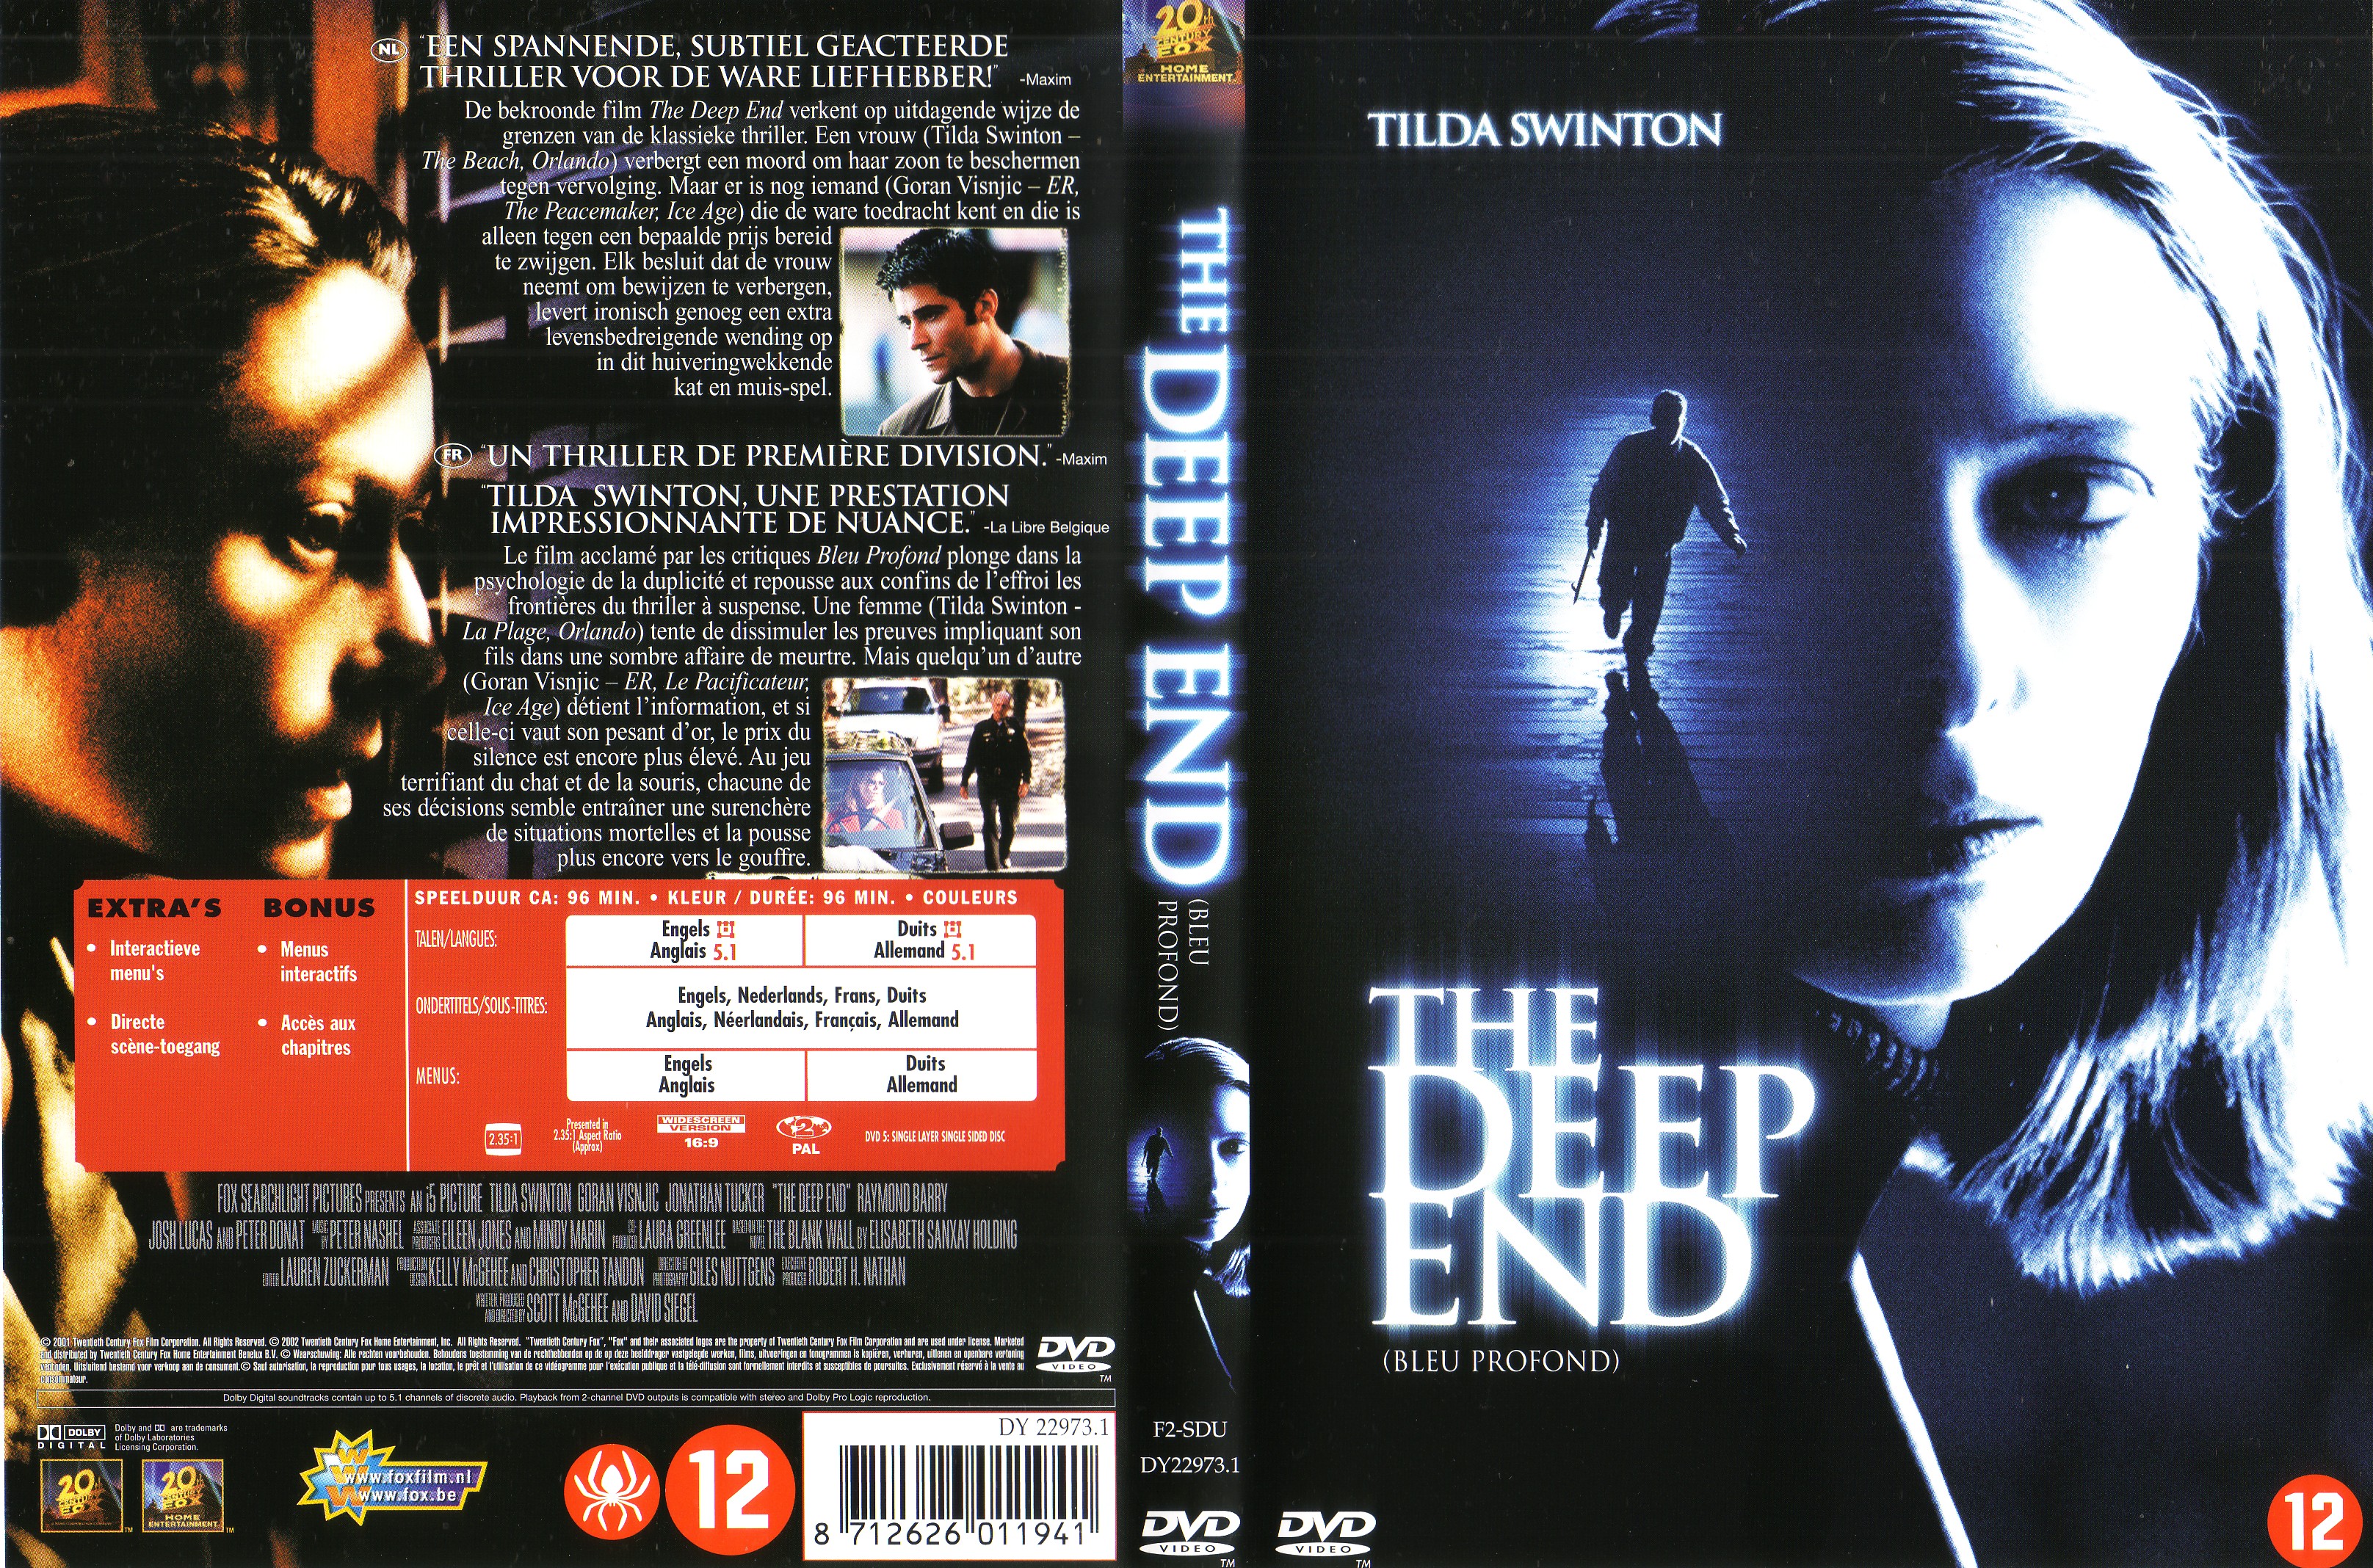 Jaquette DVD The deep end - Bleu profond